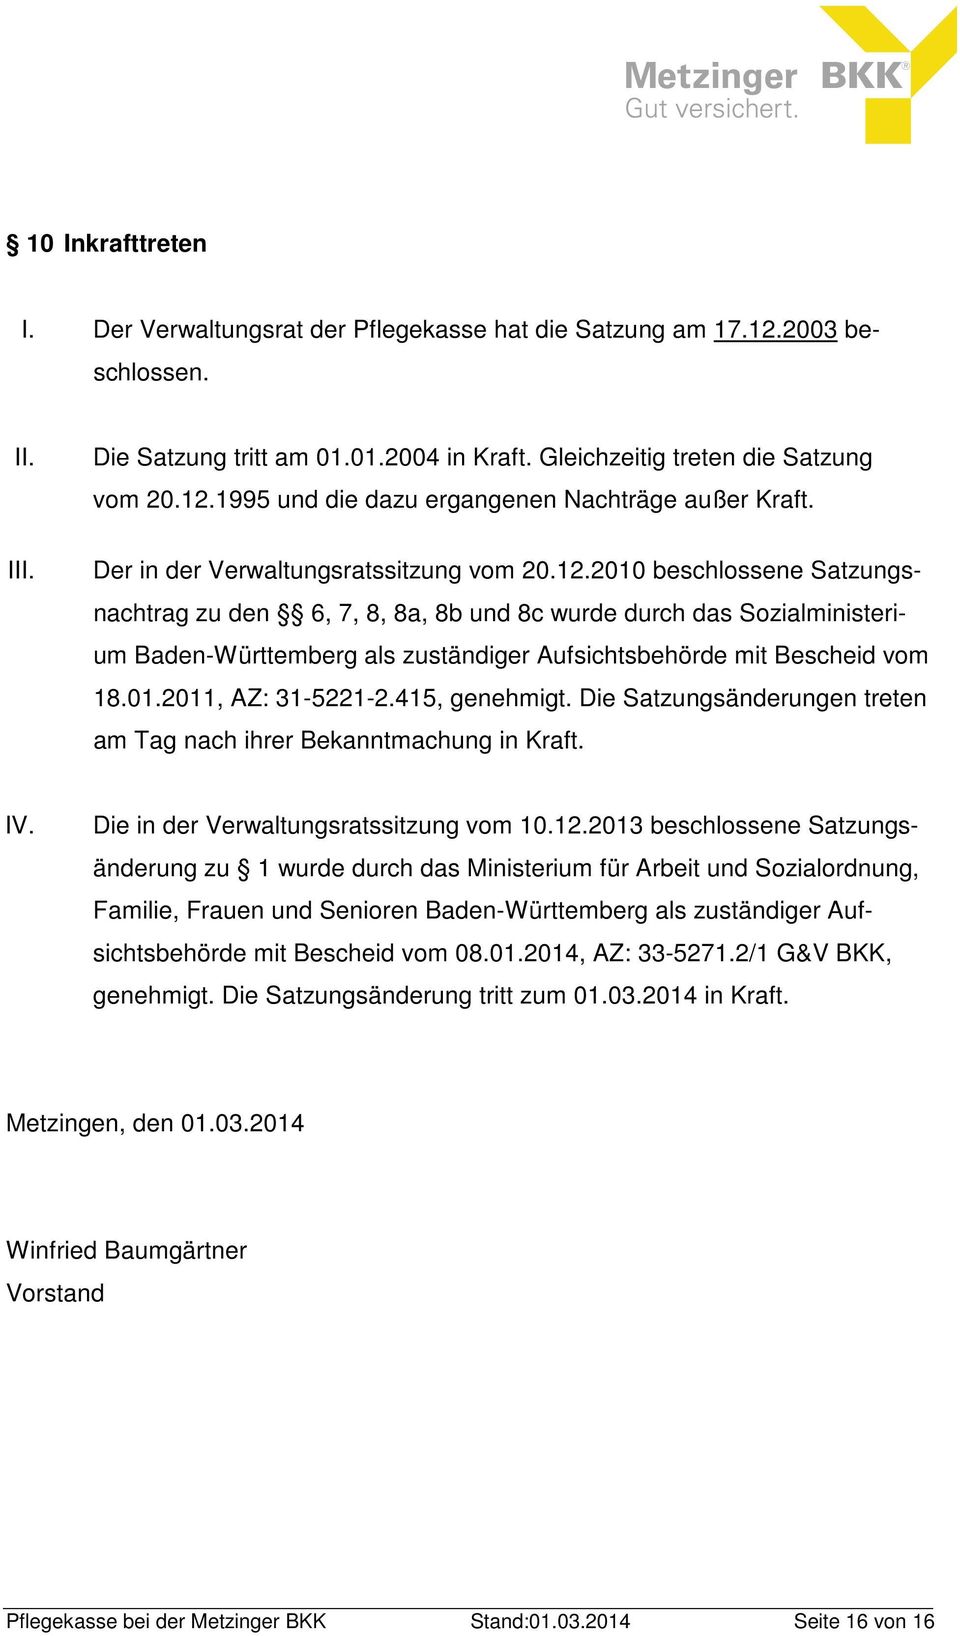 2010 beschlossene Satzungsnachtrag zu den 6, 7, 8, 8a, 8b und 8c wurde durch das Sozialministerium Baden-Württemberg als zuständiger Aufsichtsbehörde mit Bescheid vom 18.01.2011, AZ: 31-5221-2.